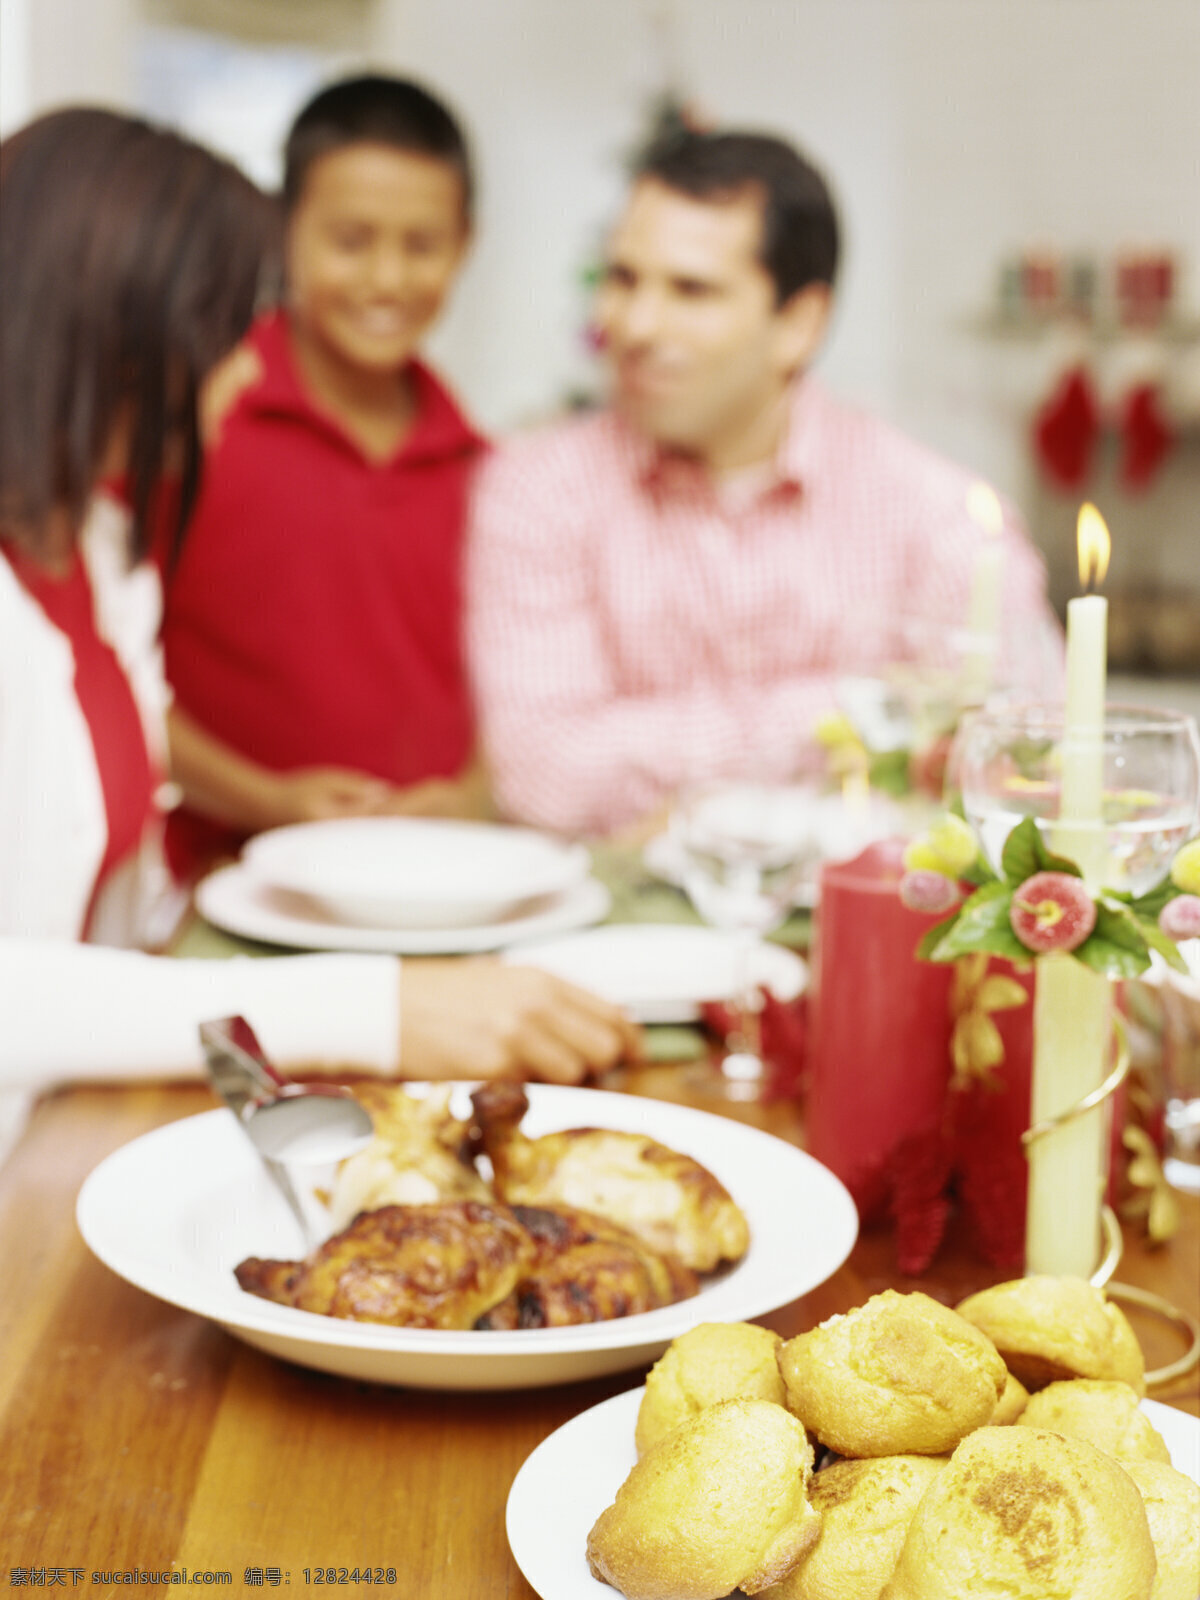 圣诞节 聚餐 外国 家庭 新年素材 外国家庭 外国女性 男性 夫妻 夫妇 圣诞大餐 美食 家庭图片 人物图片